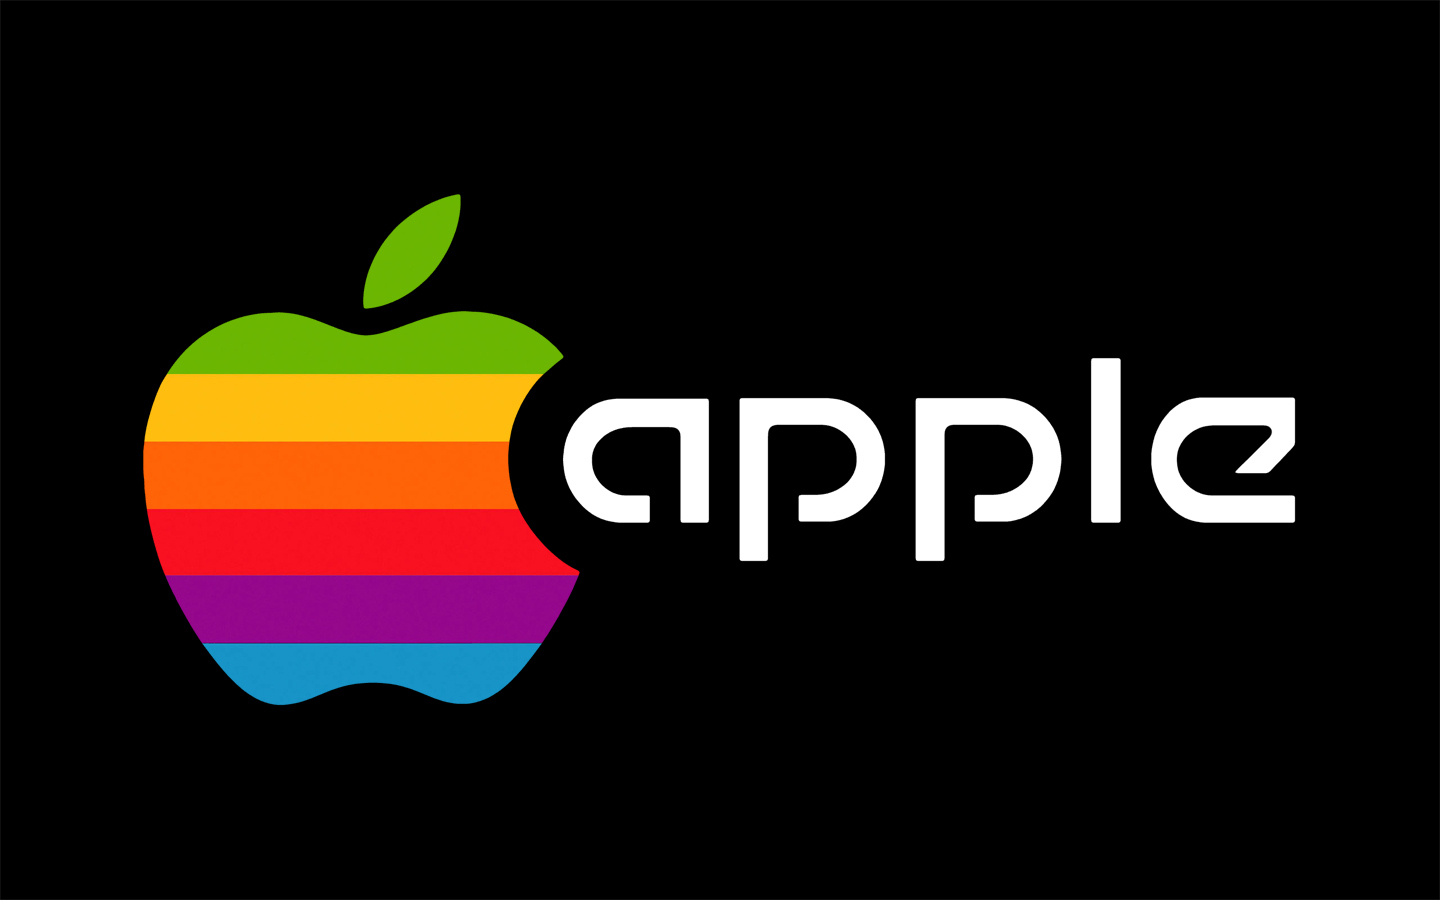 apple, technology, apple inc wallpaper for mobile